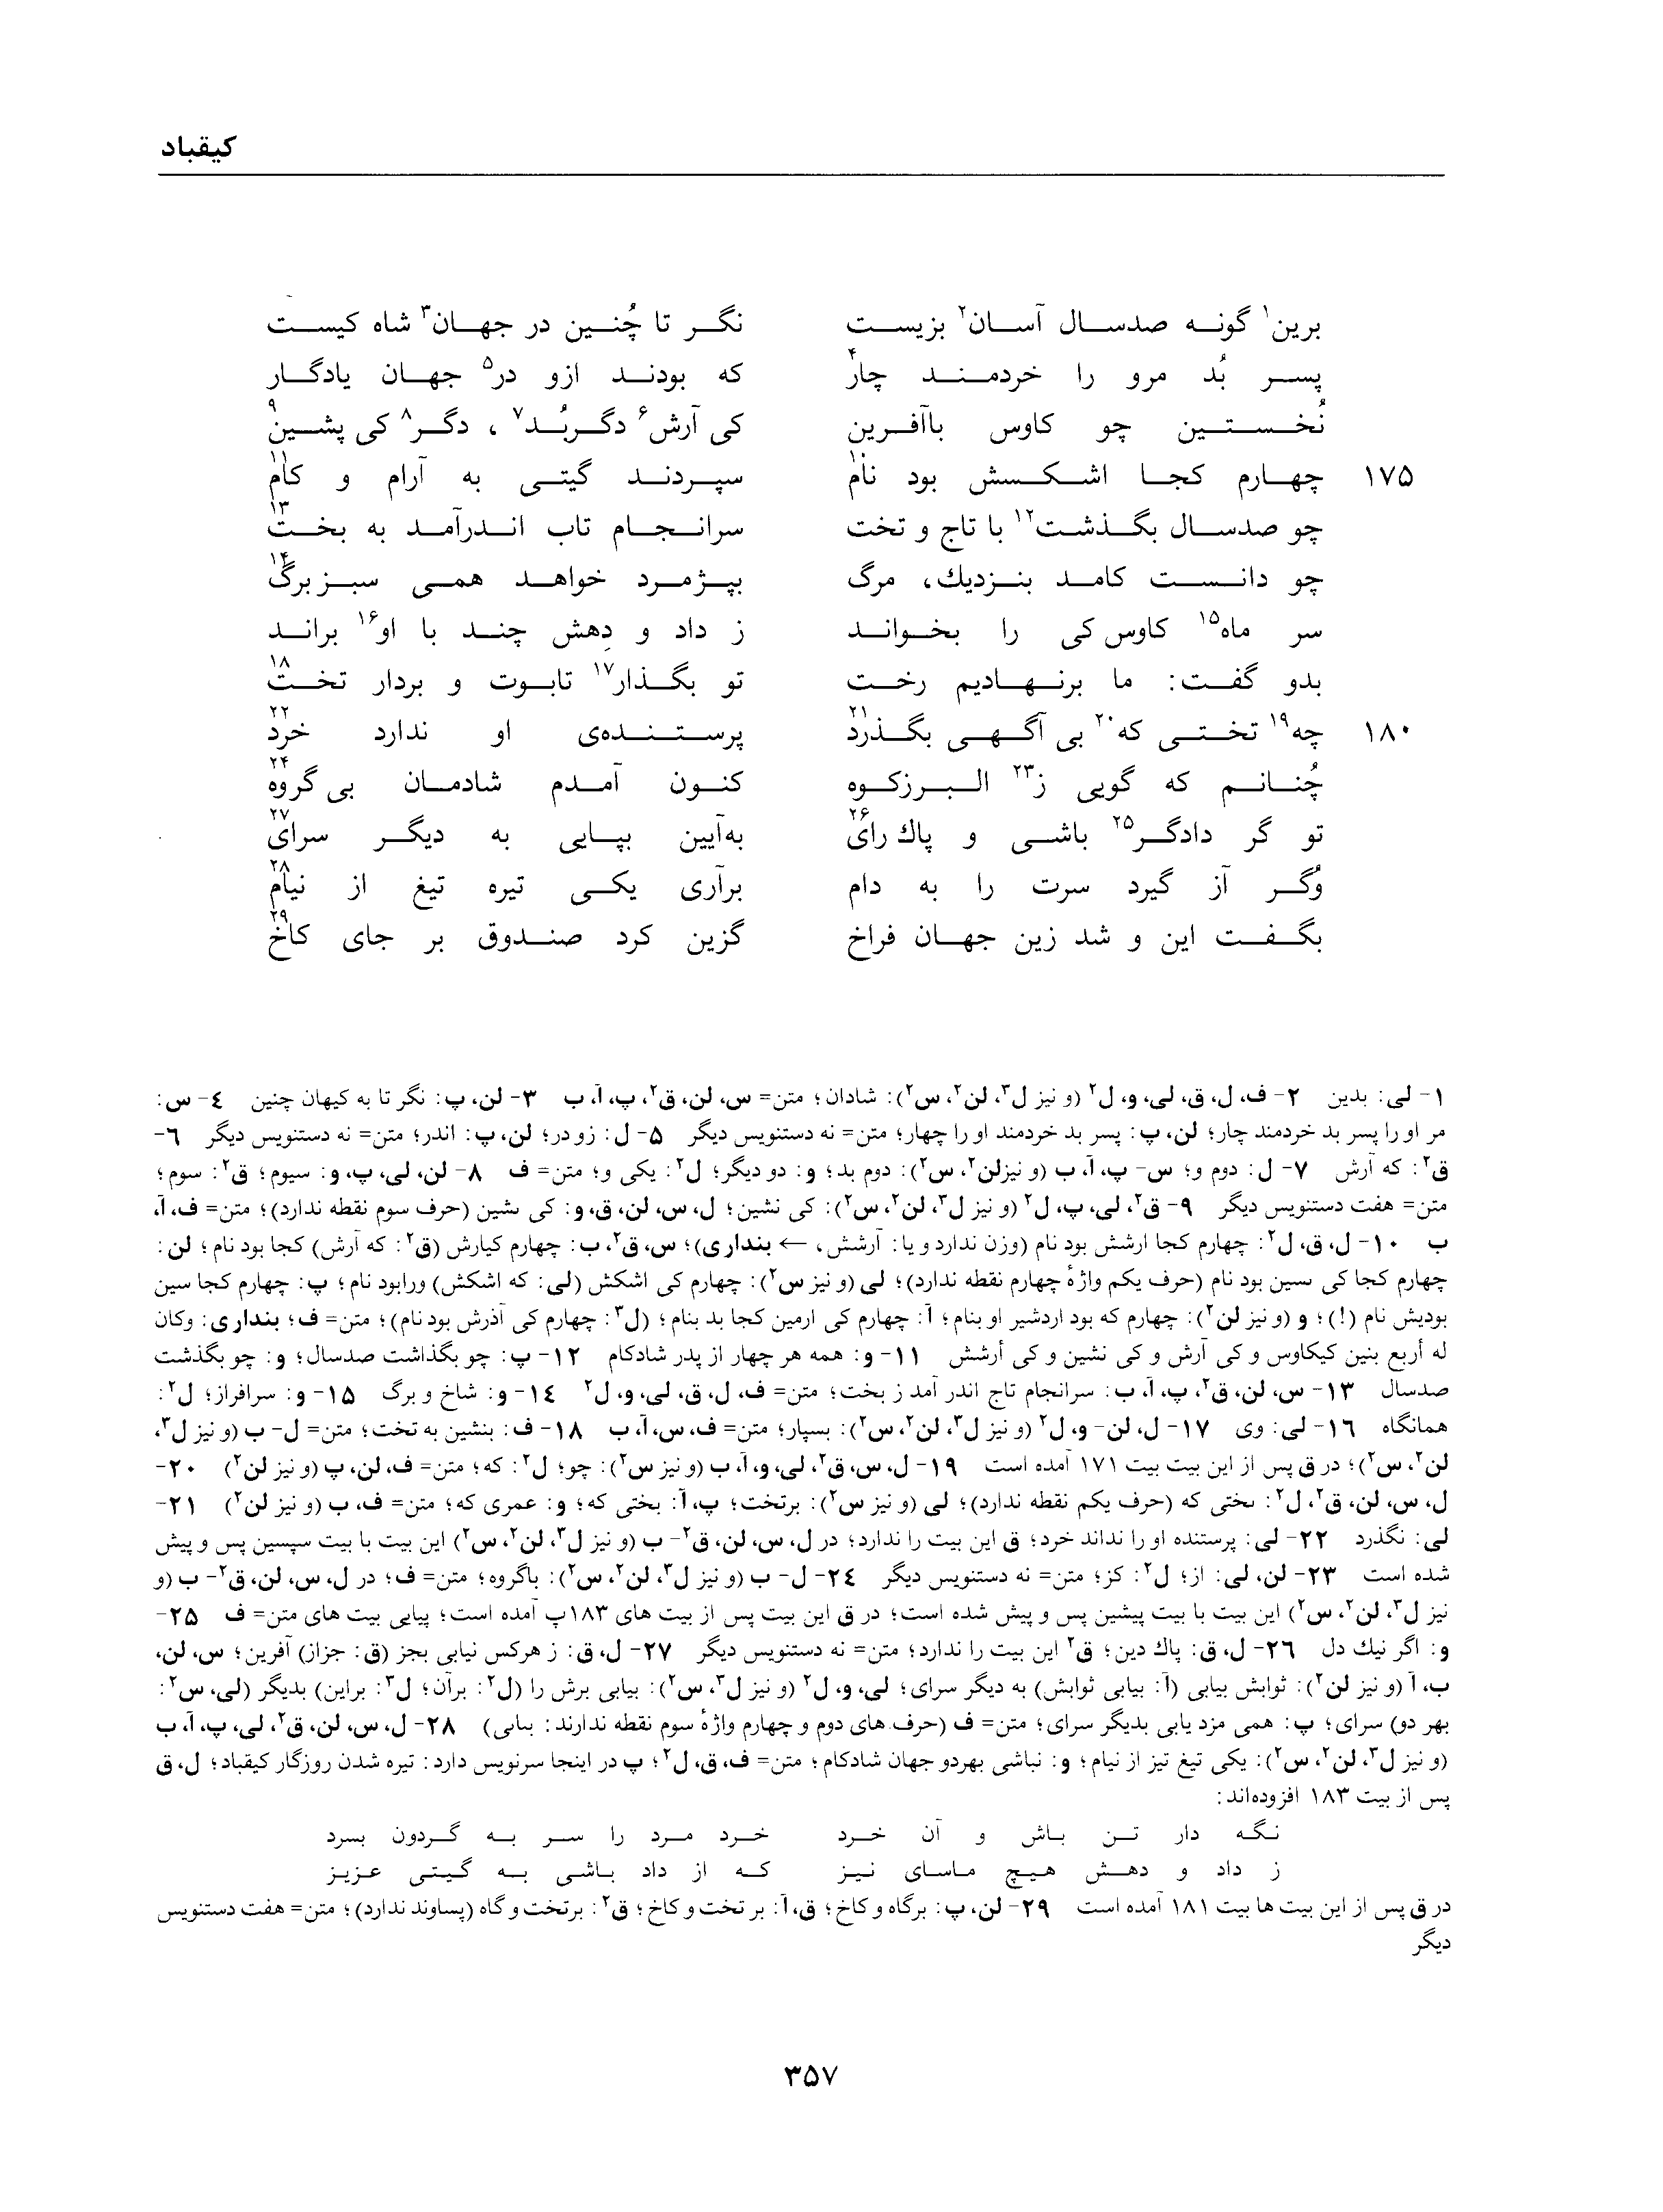 vol. 1, p. 357